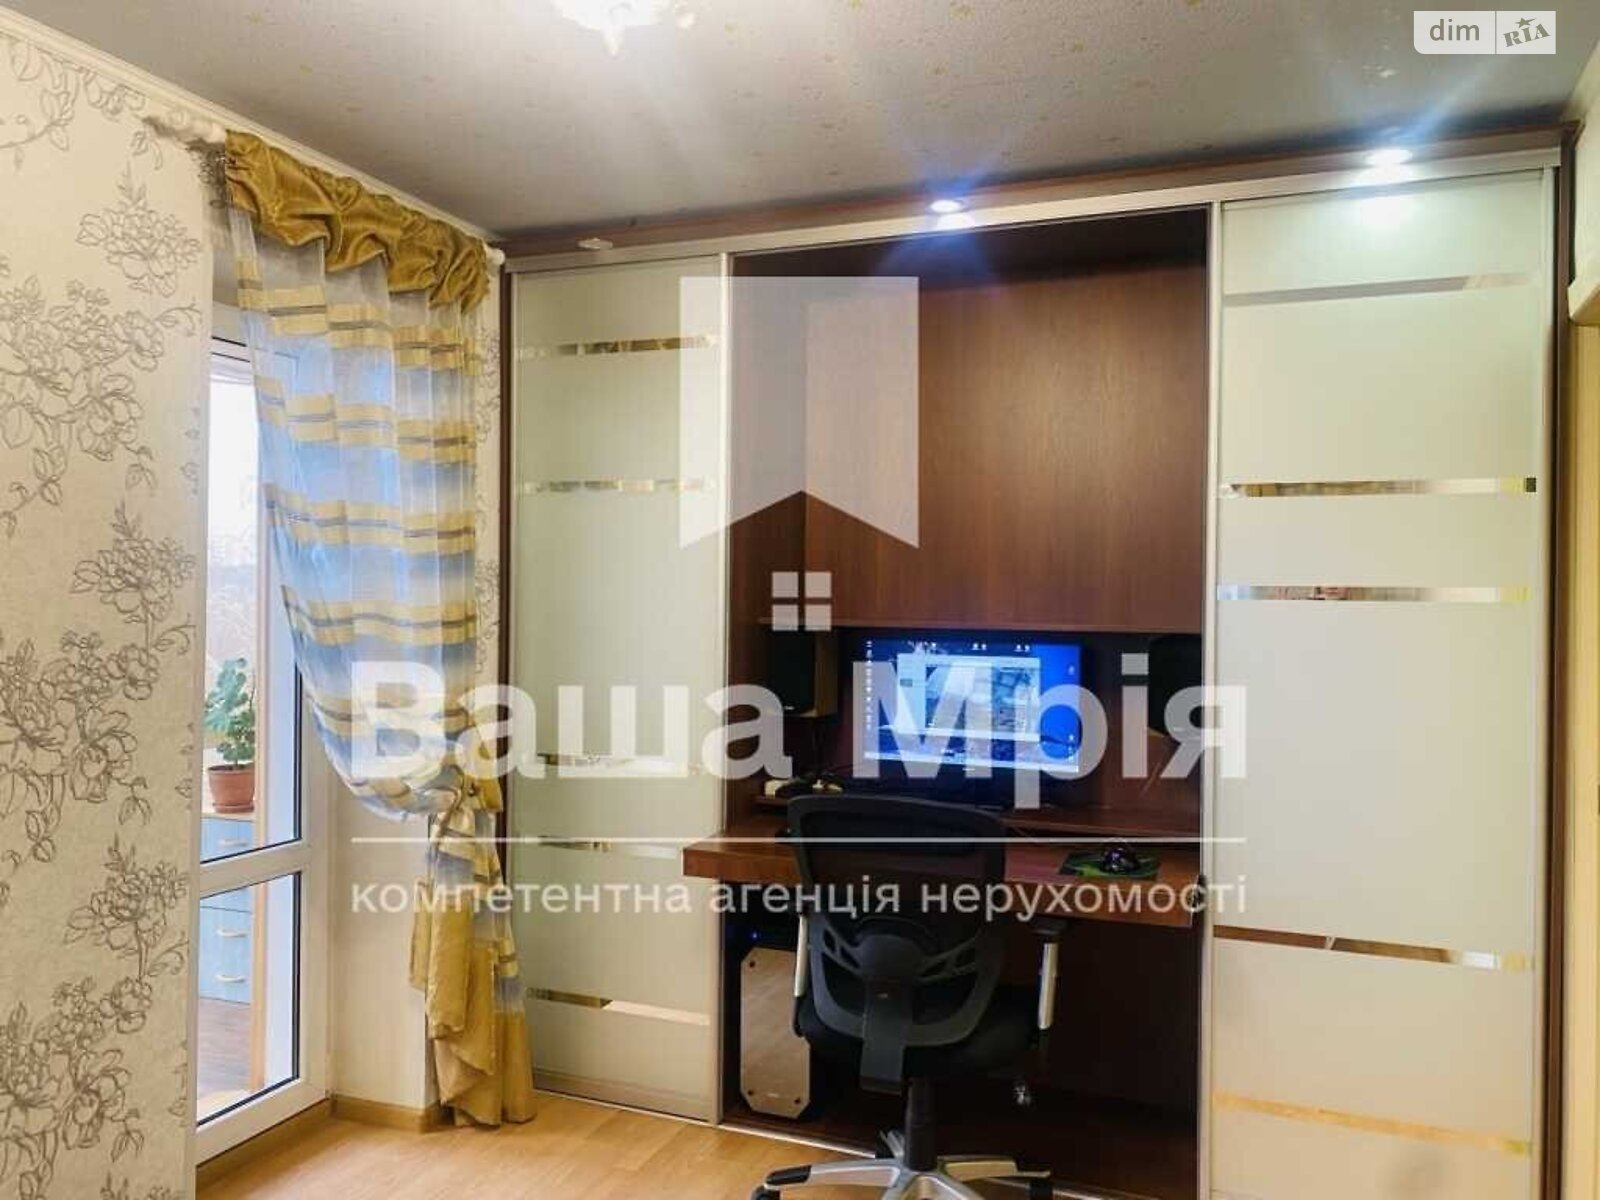 Продажа двухкомнатной квартиры в Полтаве, на ул. Великотырновская 1, район Сады 1 фото 1